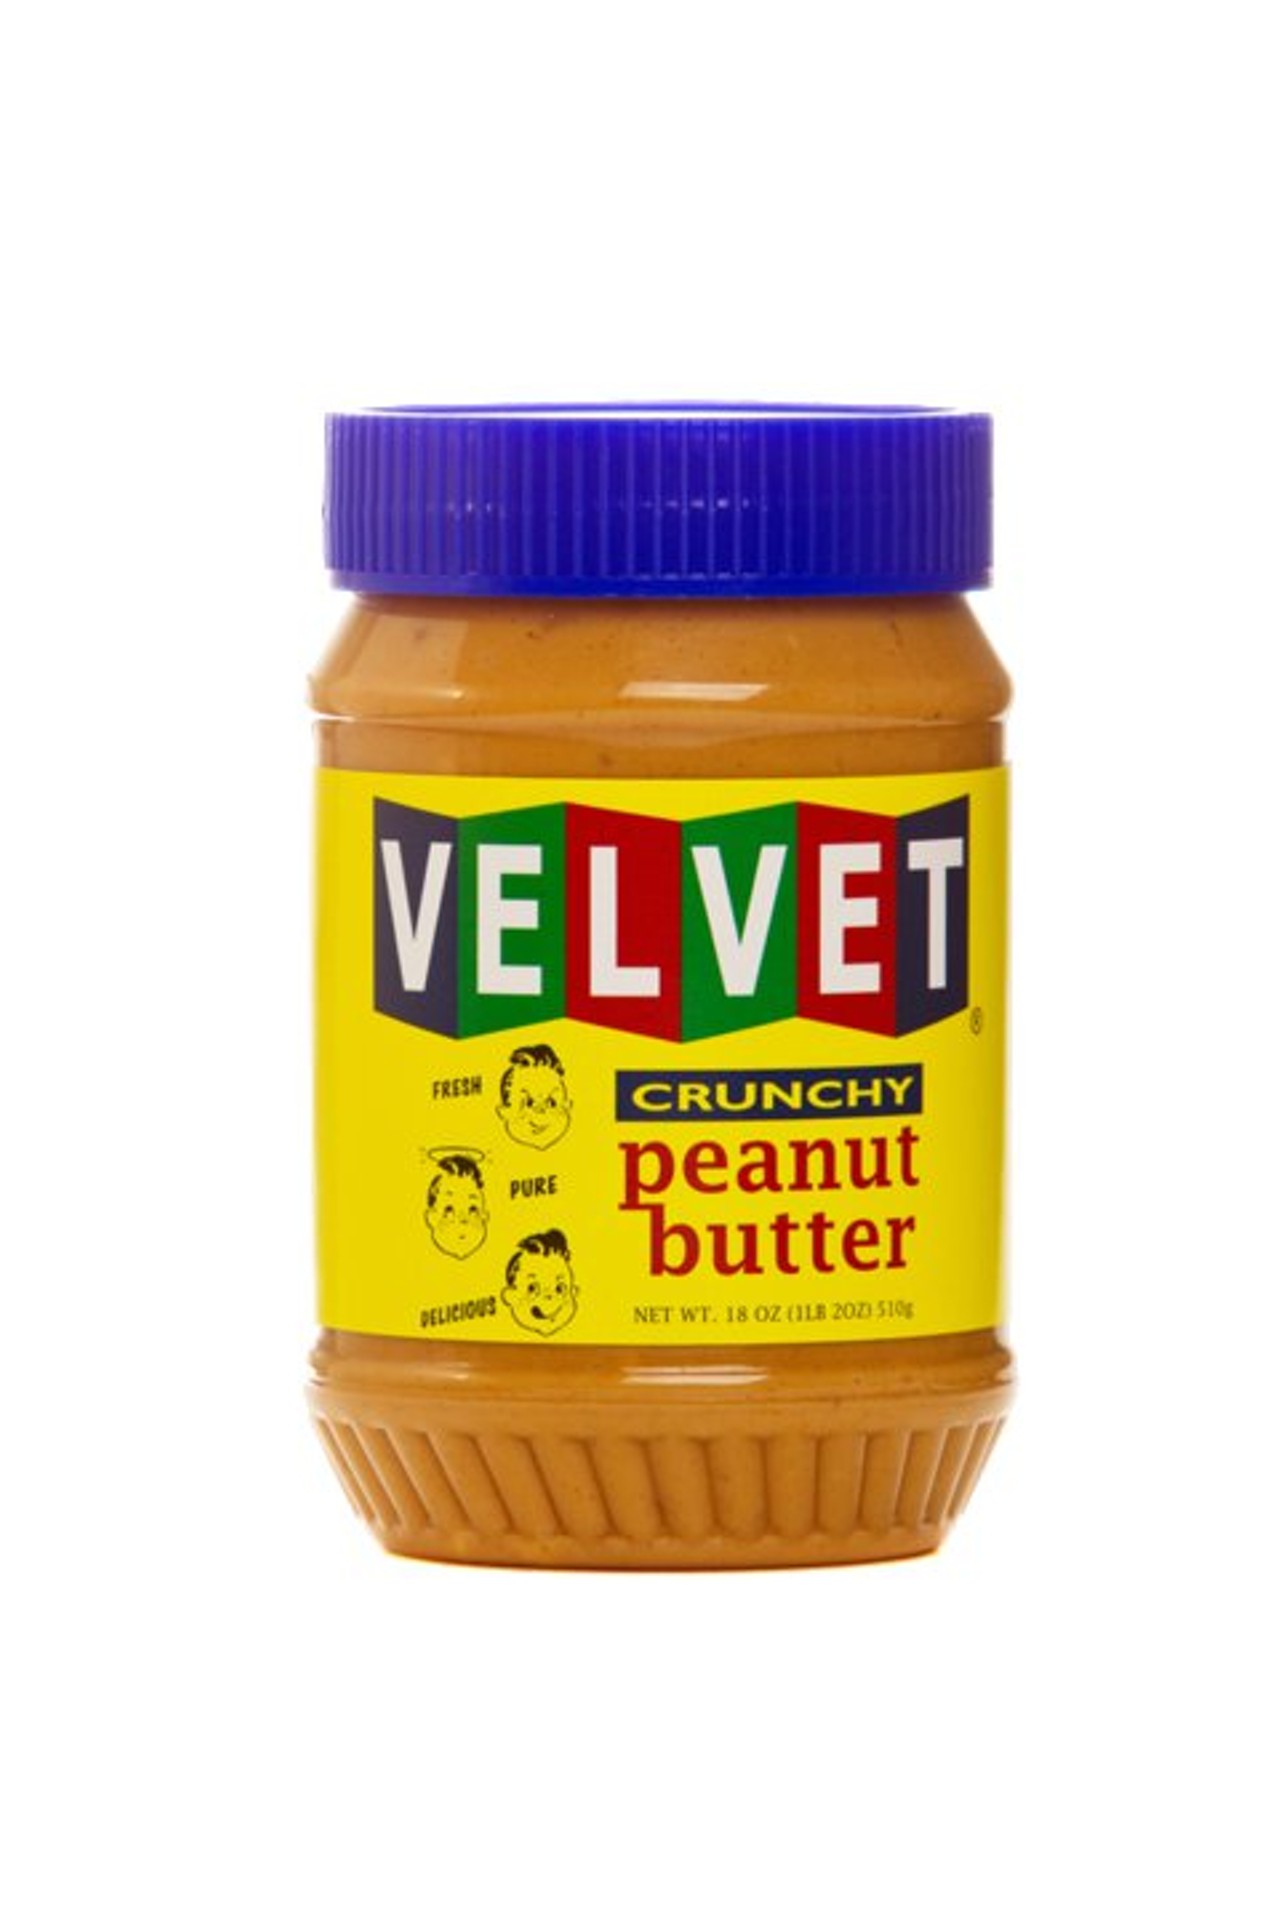 Velvet Peanut Butter (Photo via Facebook)